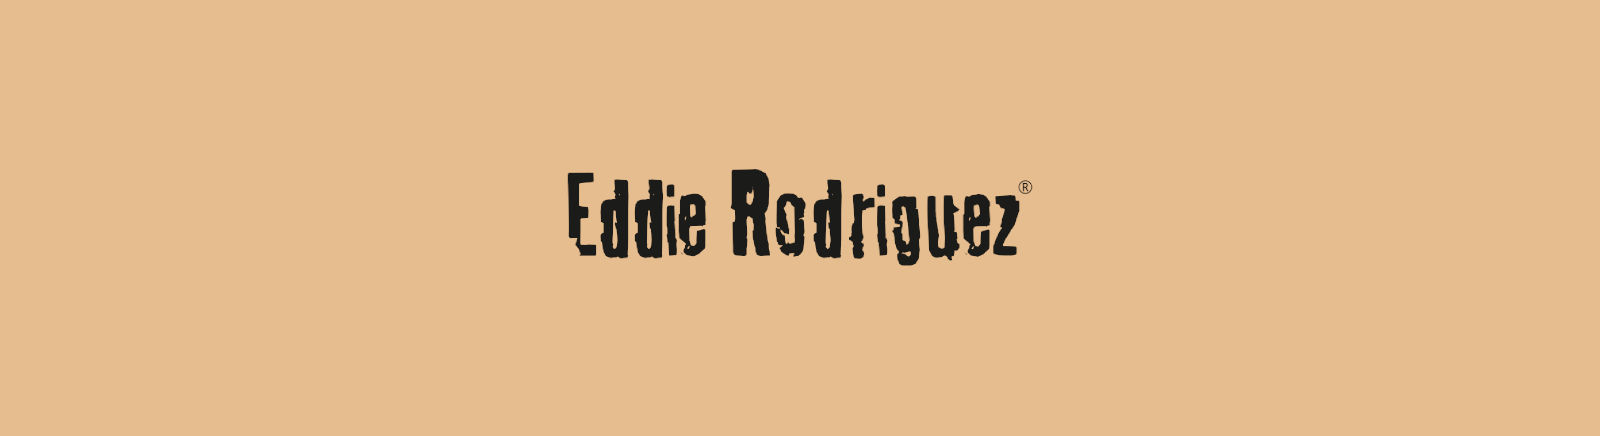 Prange: Eddie Rodriguez Combat Boots für Damen online shoppen